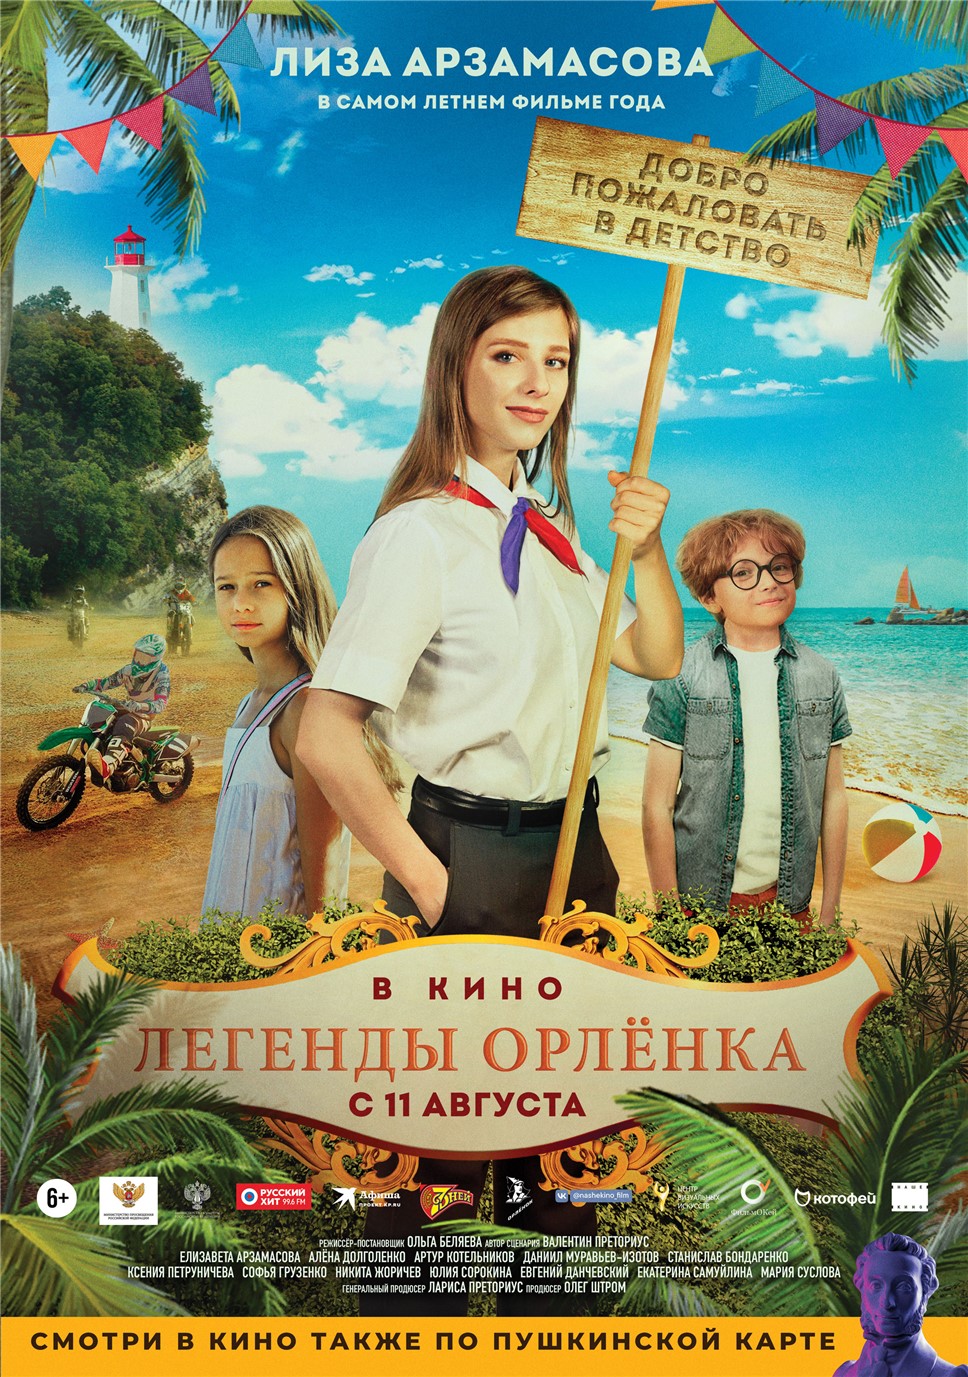 Постер фильма "Легенды Орленка"